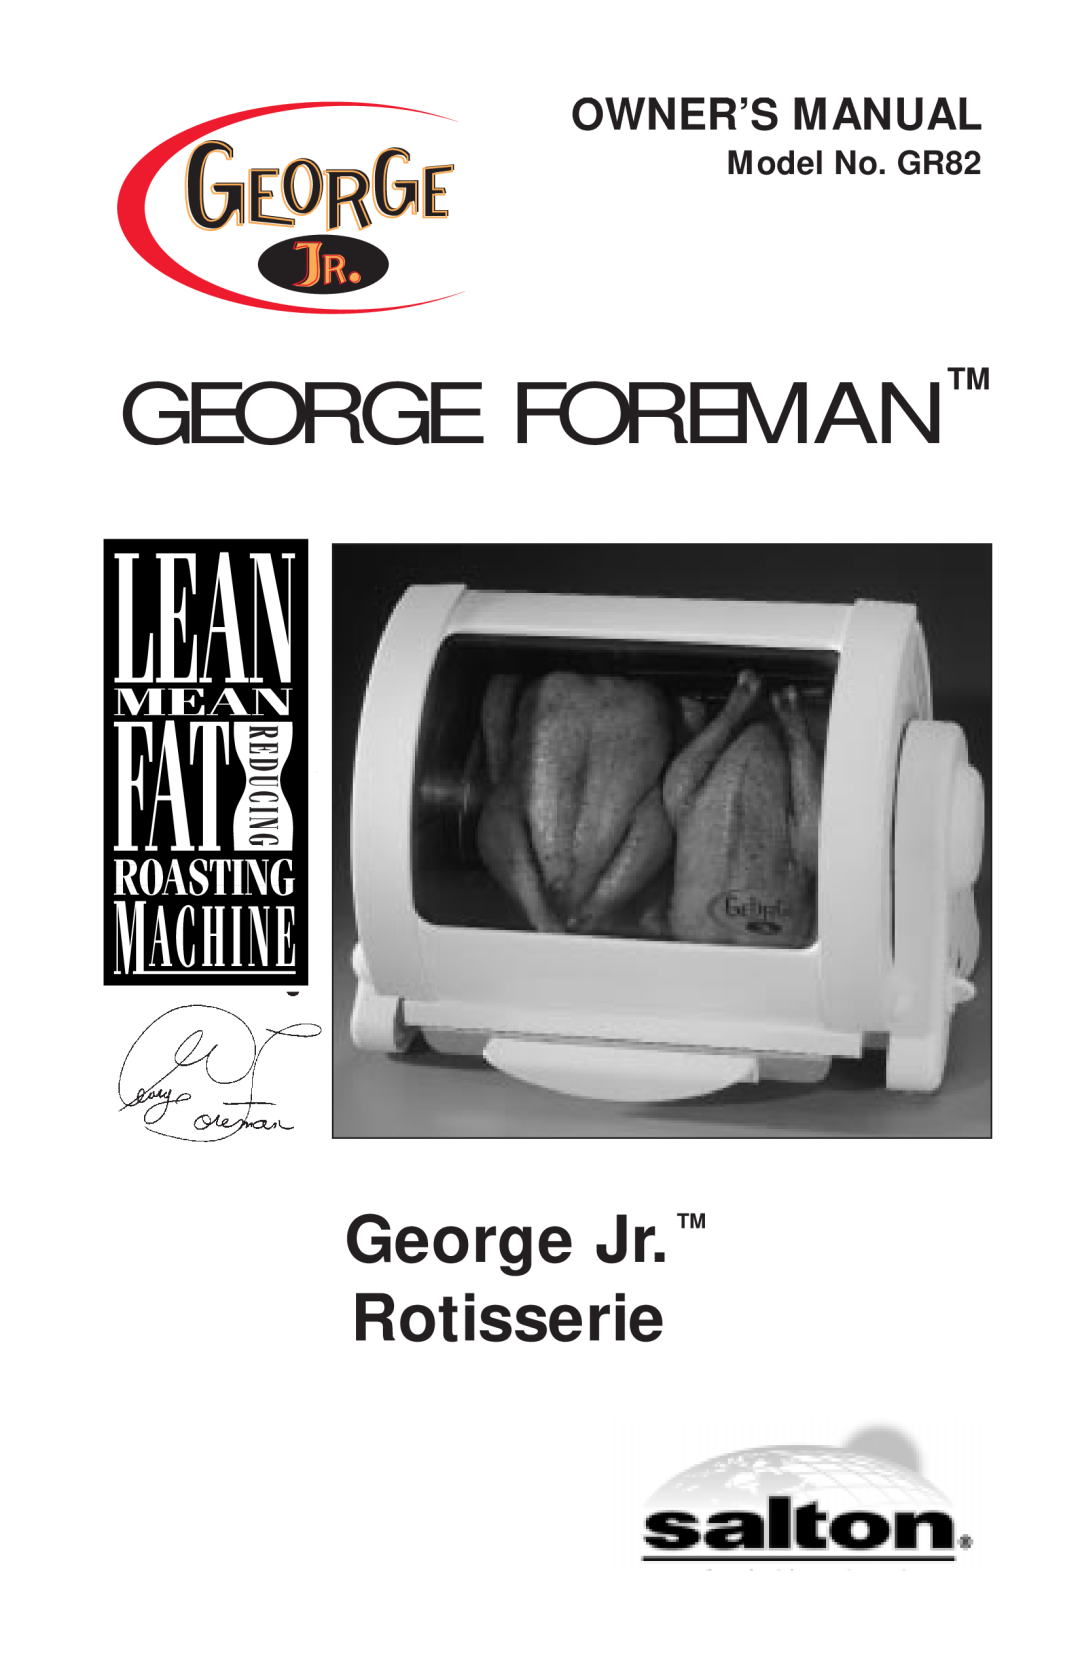 George Foreman owner manual George Jr. Rotisserie, George Foreman Tm, Model No. GR82 